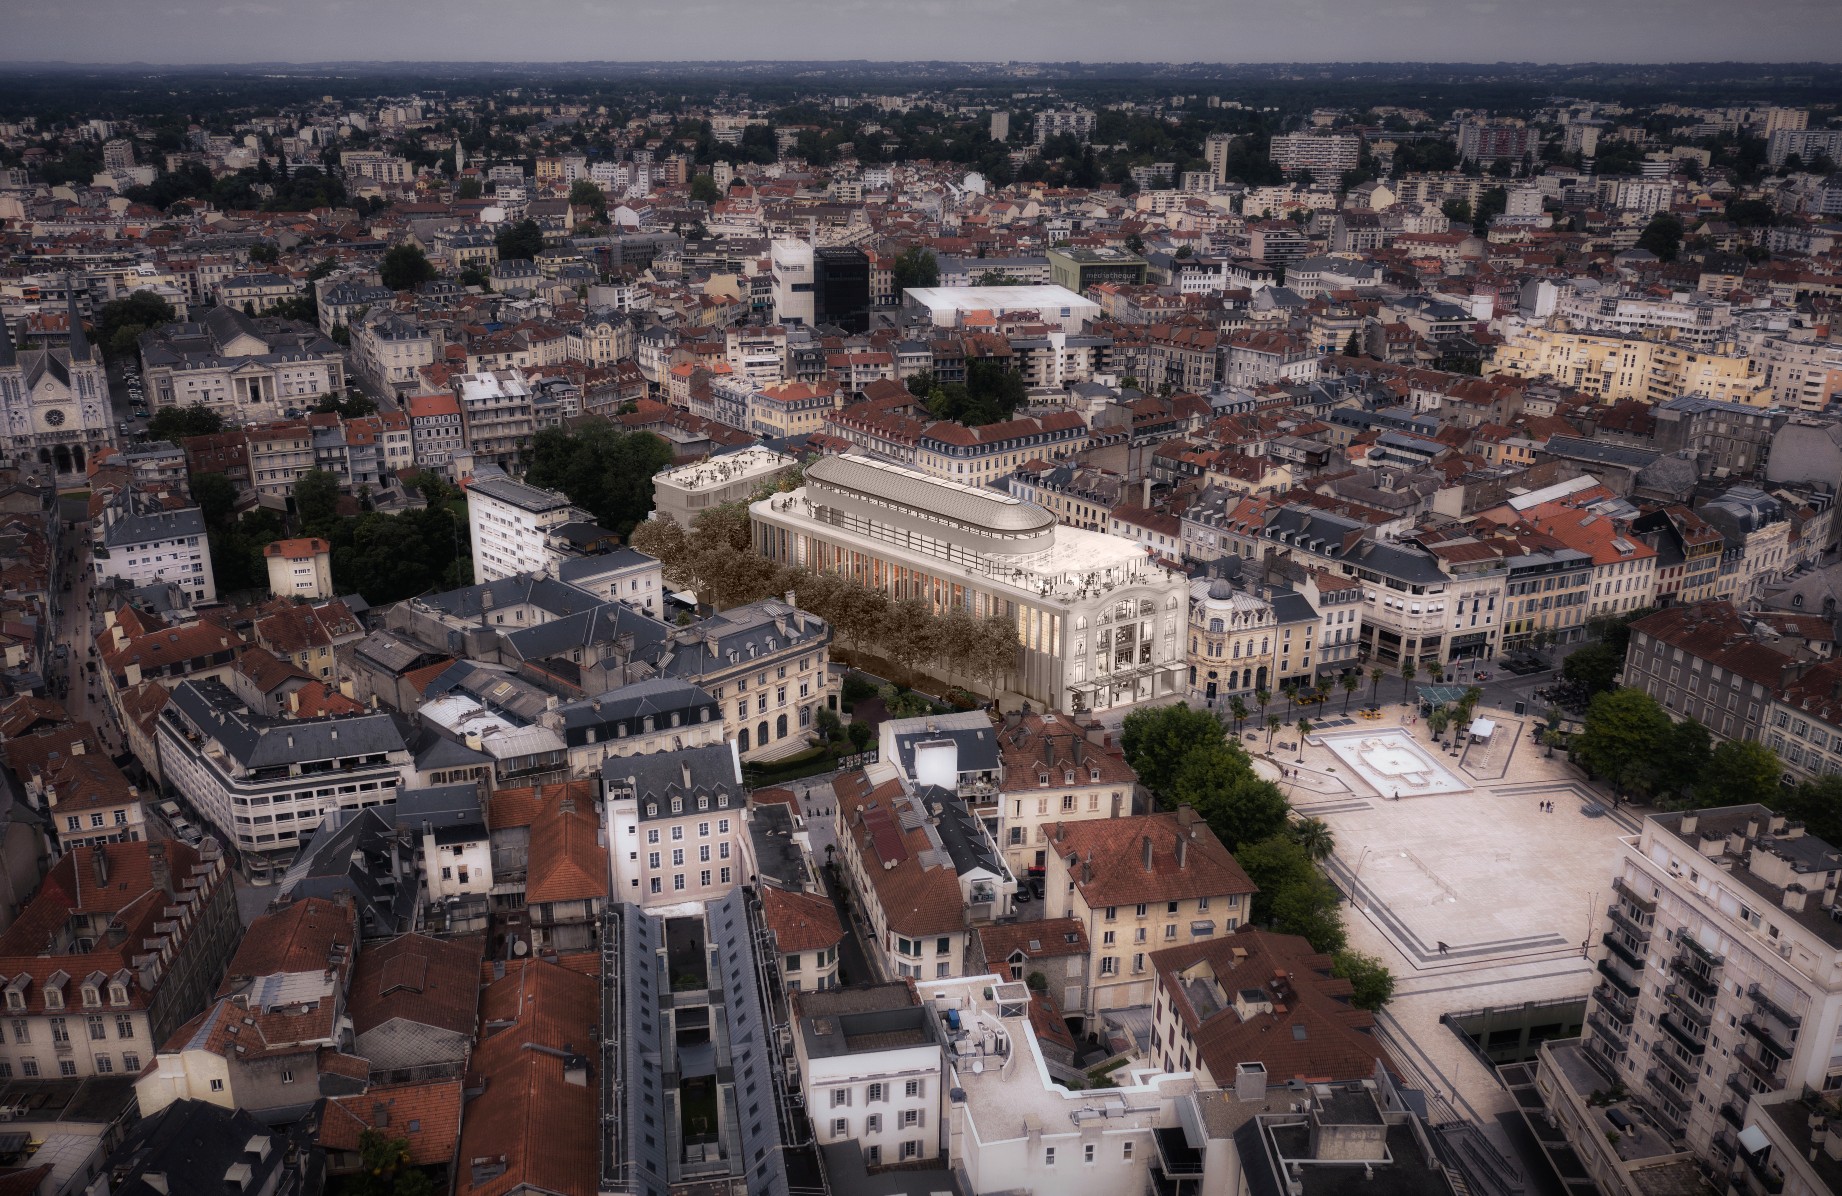 Vue aérienne du bâtiment historique des Galeries Lafayette à Pau - image de synthèse